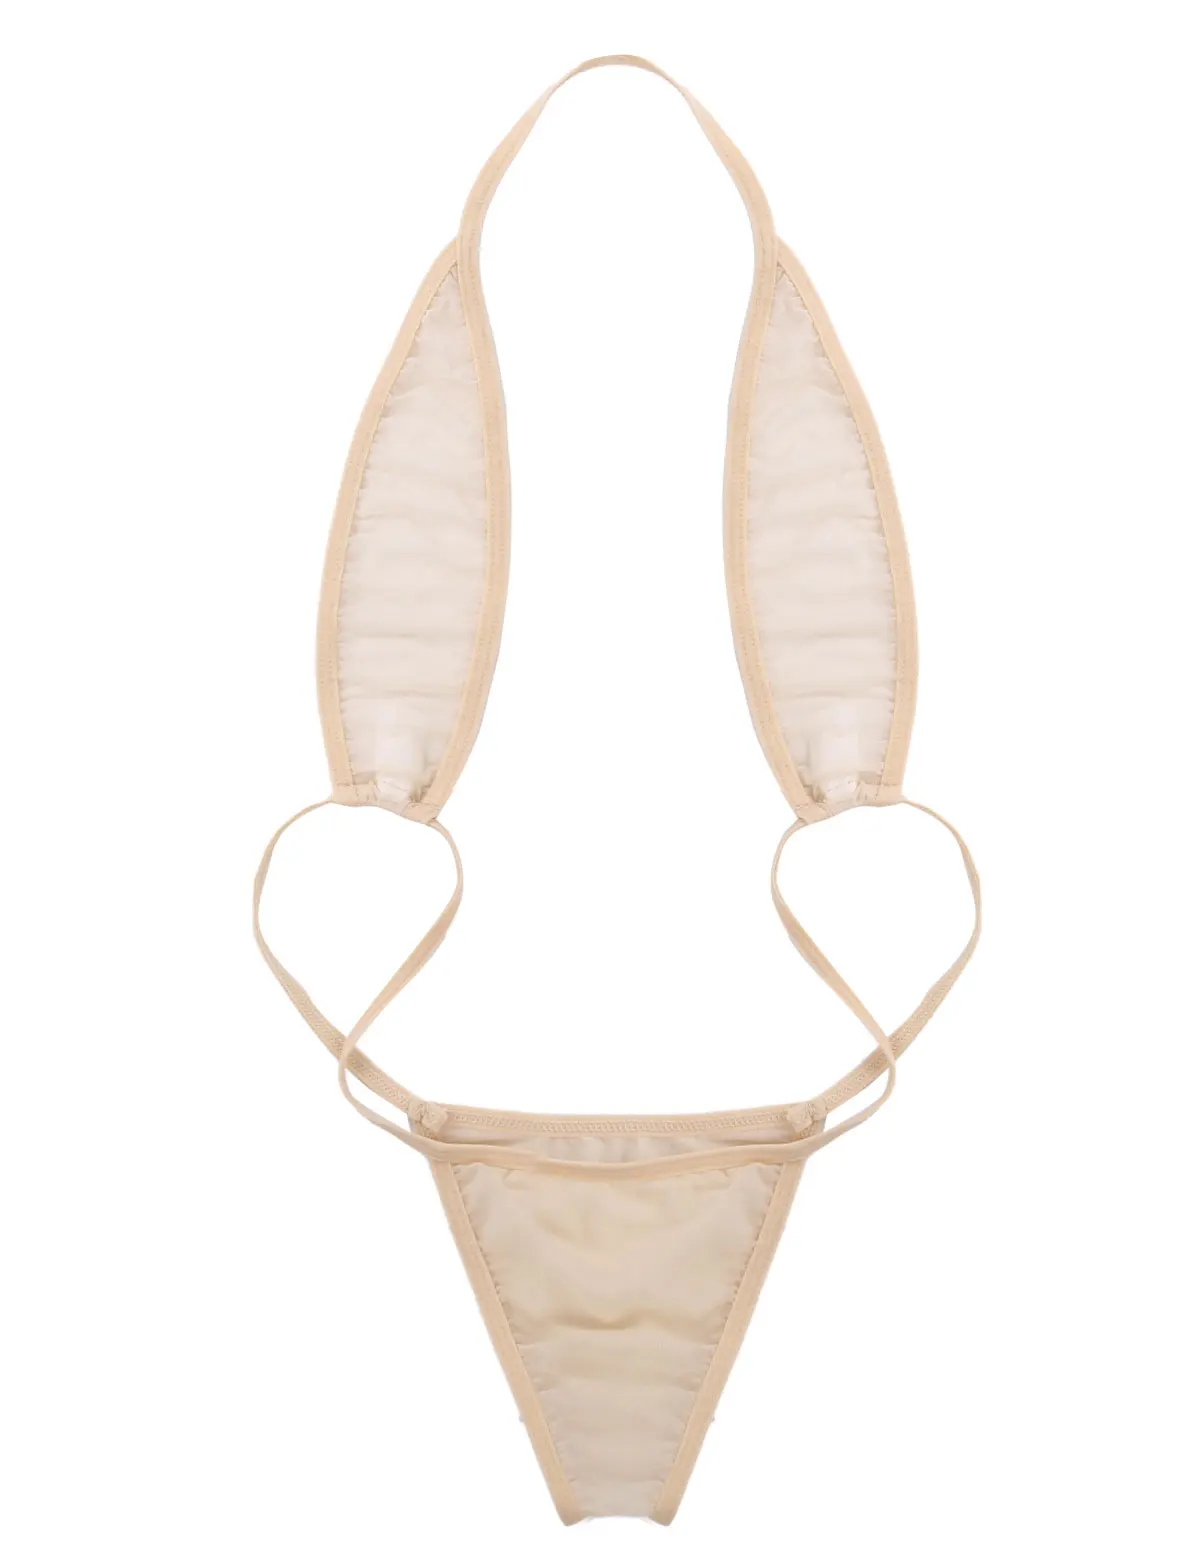 TiaoBug женский сексуальный цельный прозрачный мини стринги купальник трикини пляжный купальник эротический прозрачный ночное белье - Цвет: Apricot